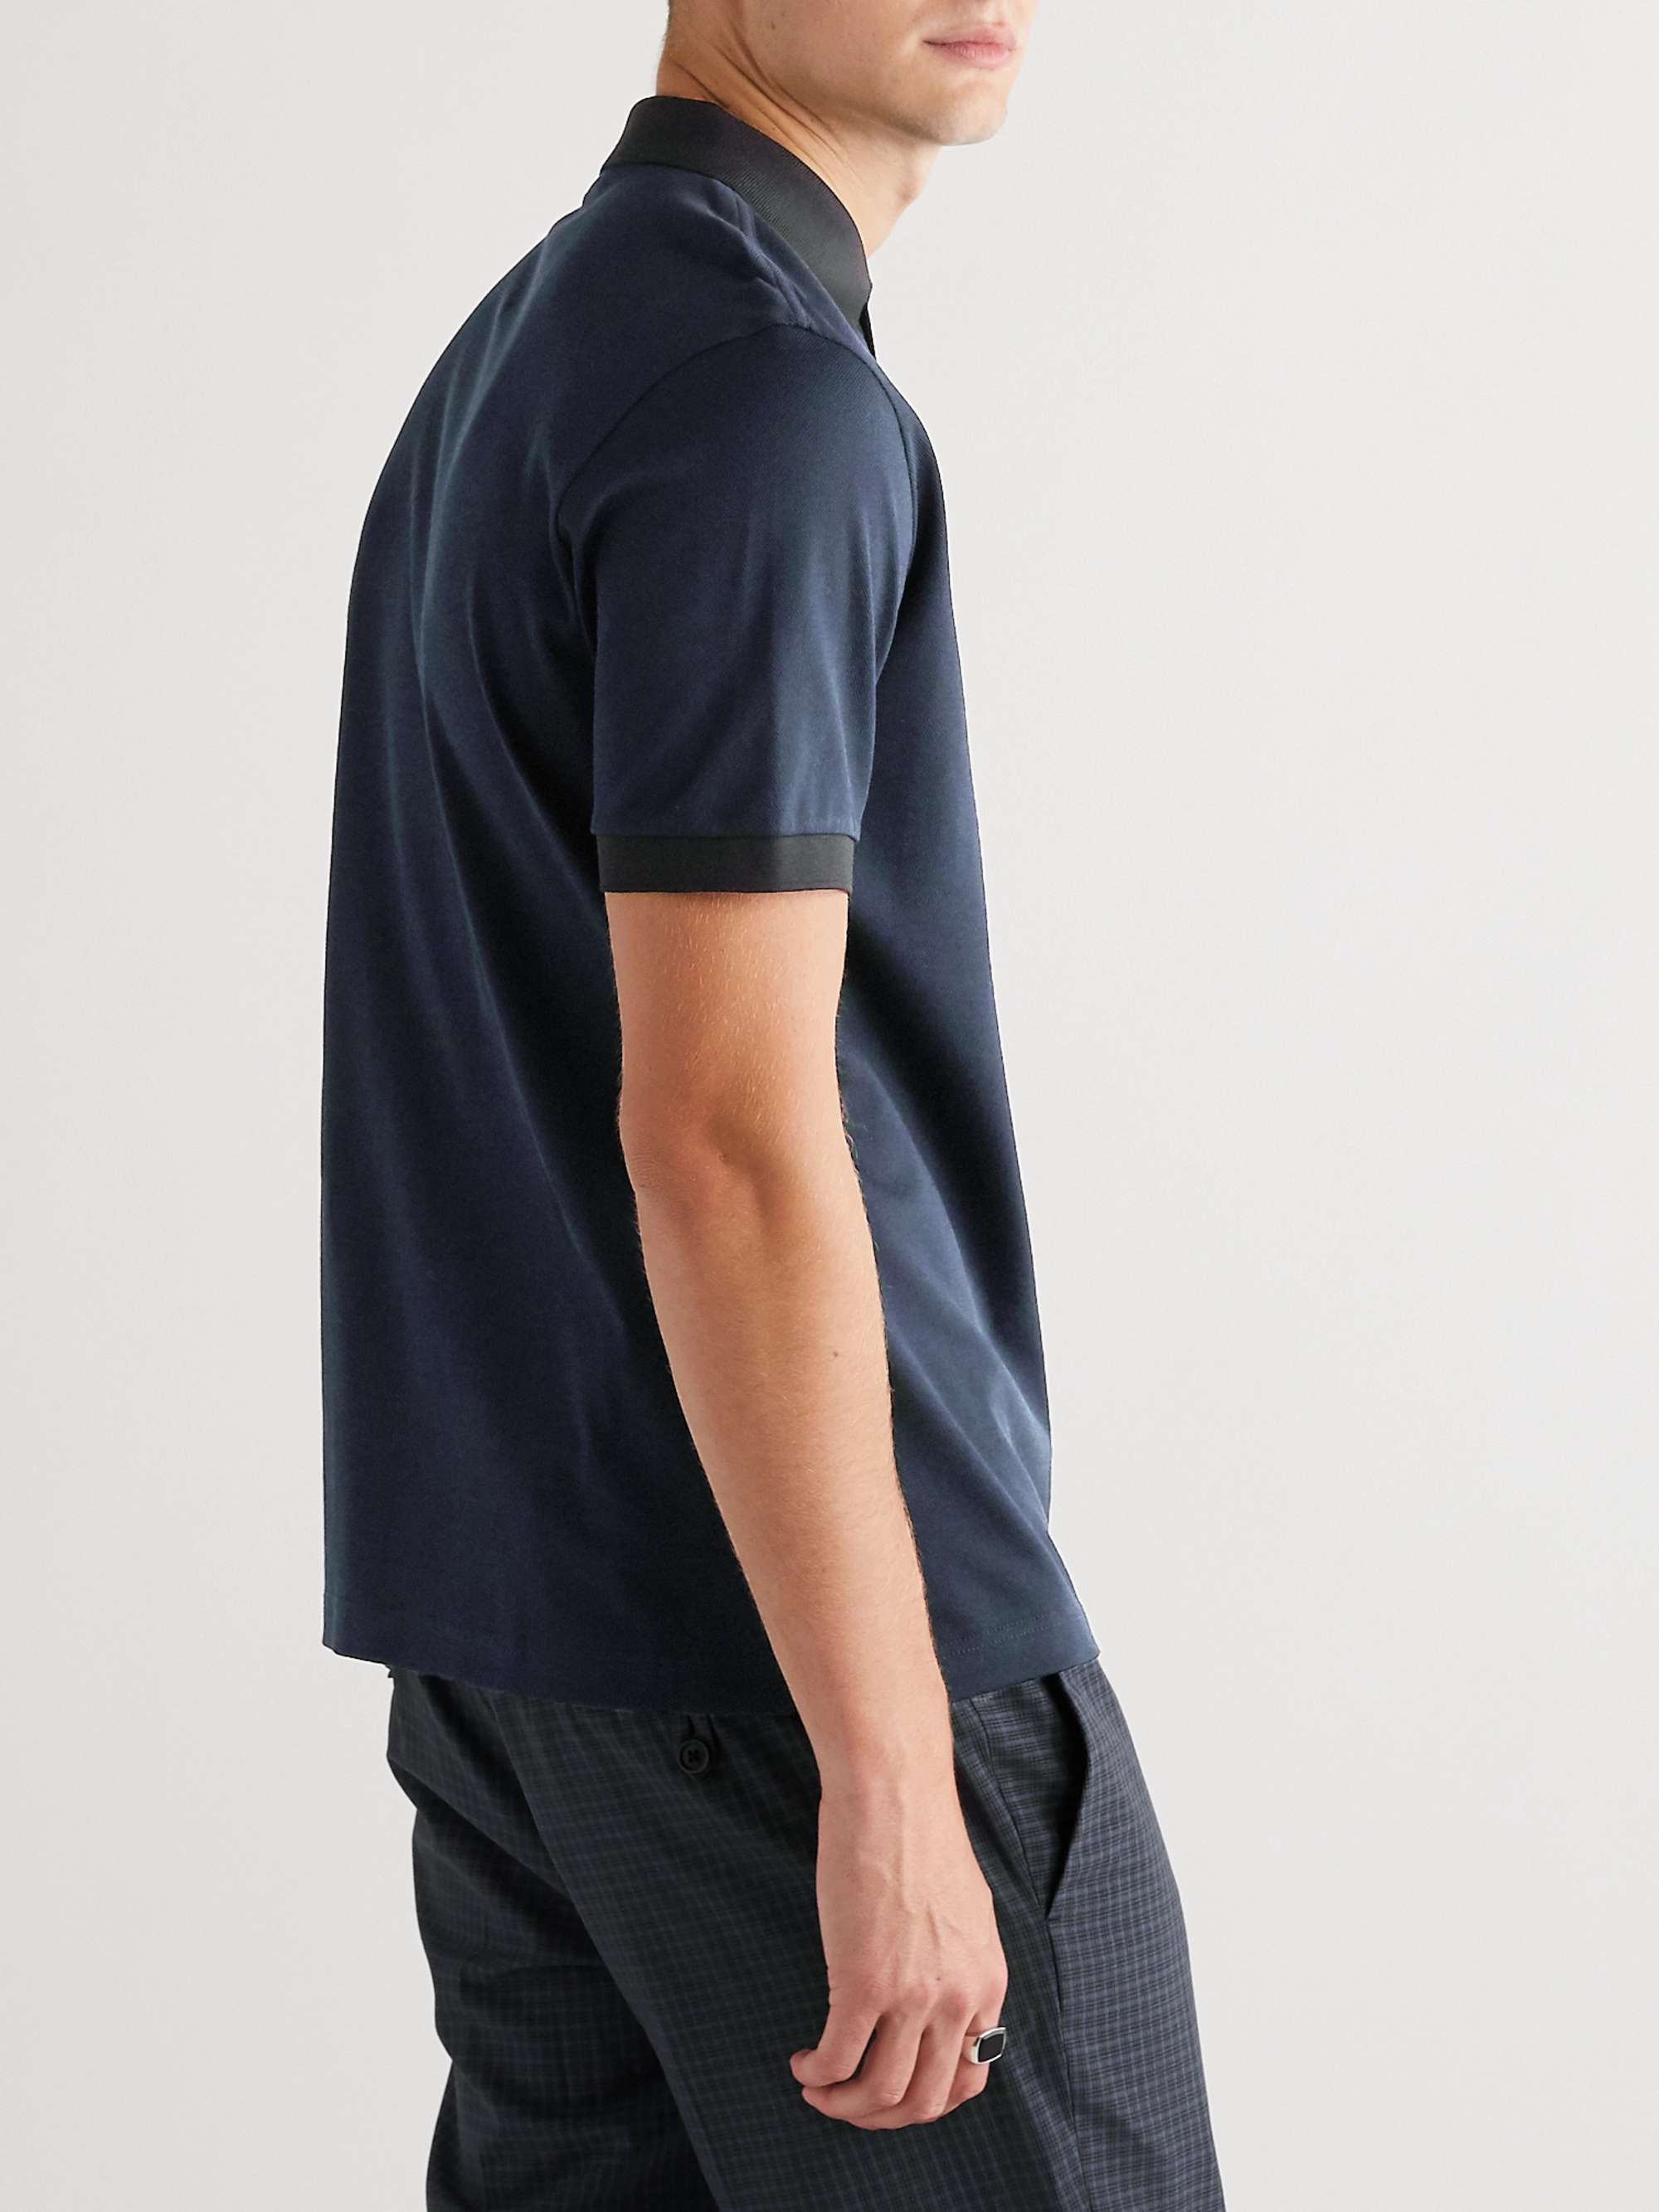 PRADA Slim-Fit Logo-Appliquéd Contrast-Tipped Cotton-Piqué Polo Shirt